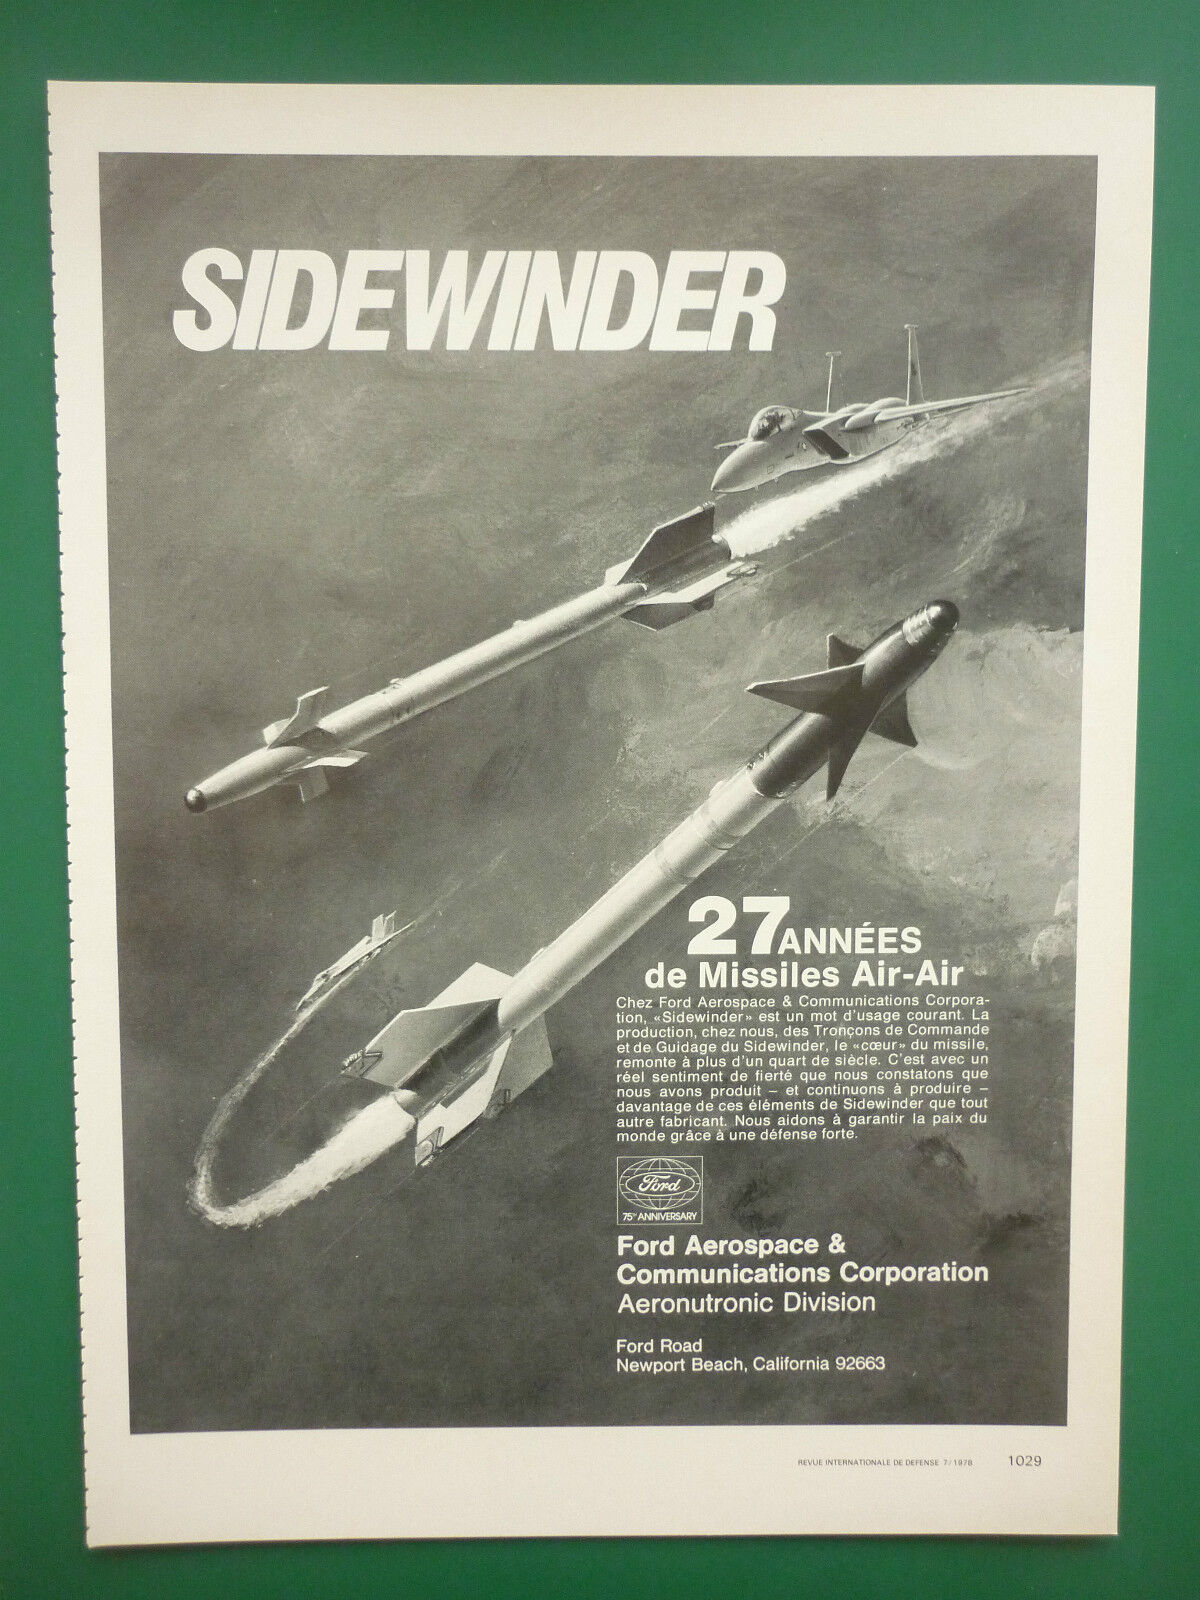 7/1978 PUB FORD AEROSPACE MISSILE SIDEWINDER GUIDANCE CONTROL FRENCH AD